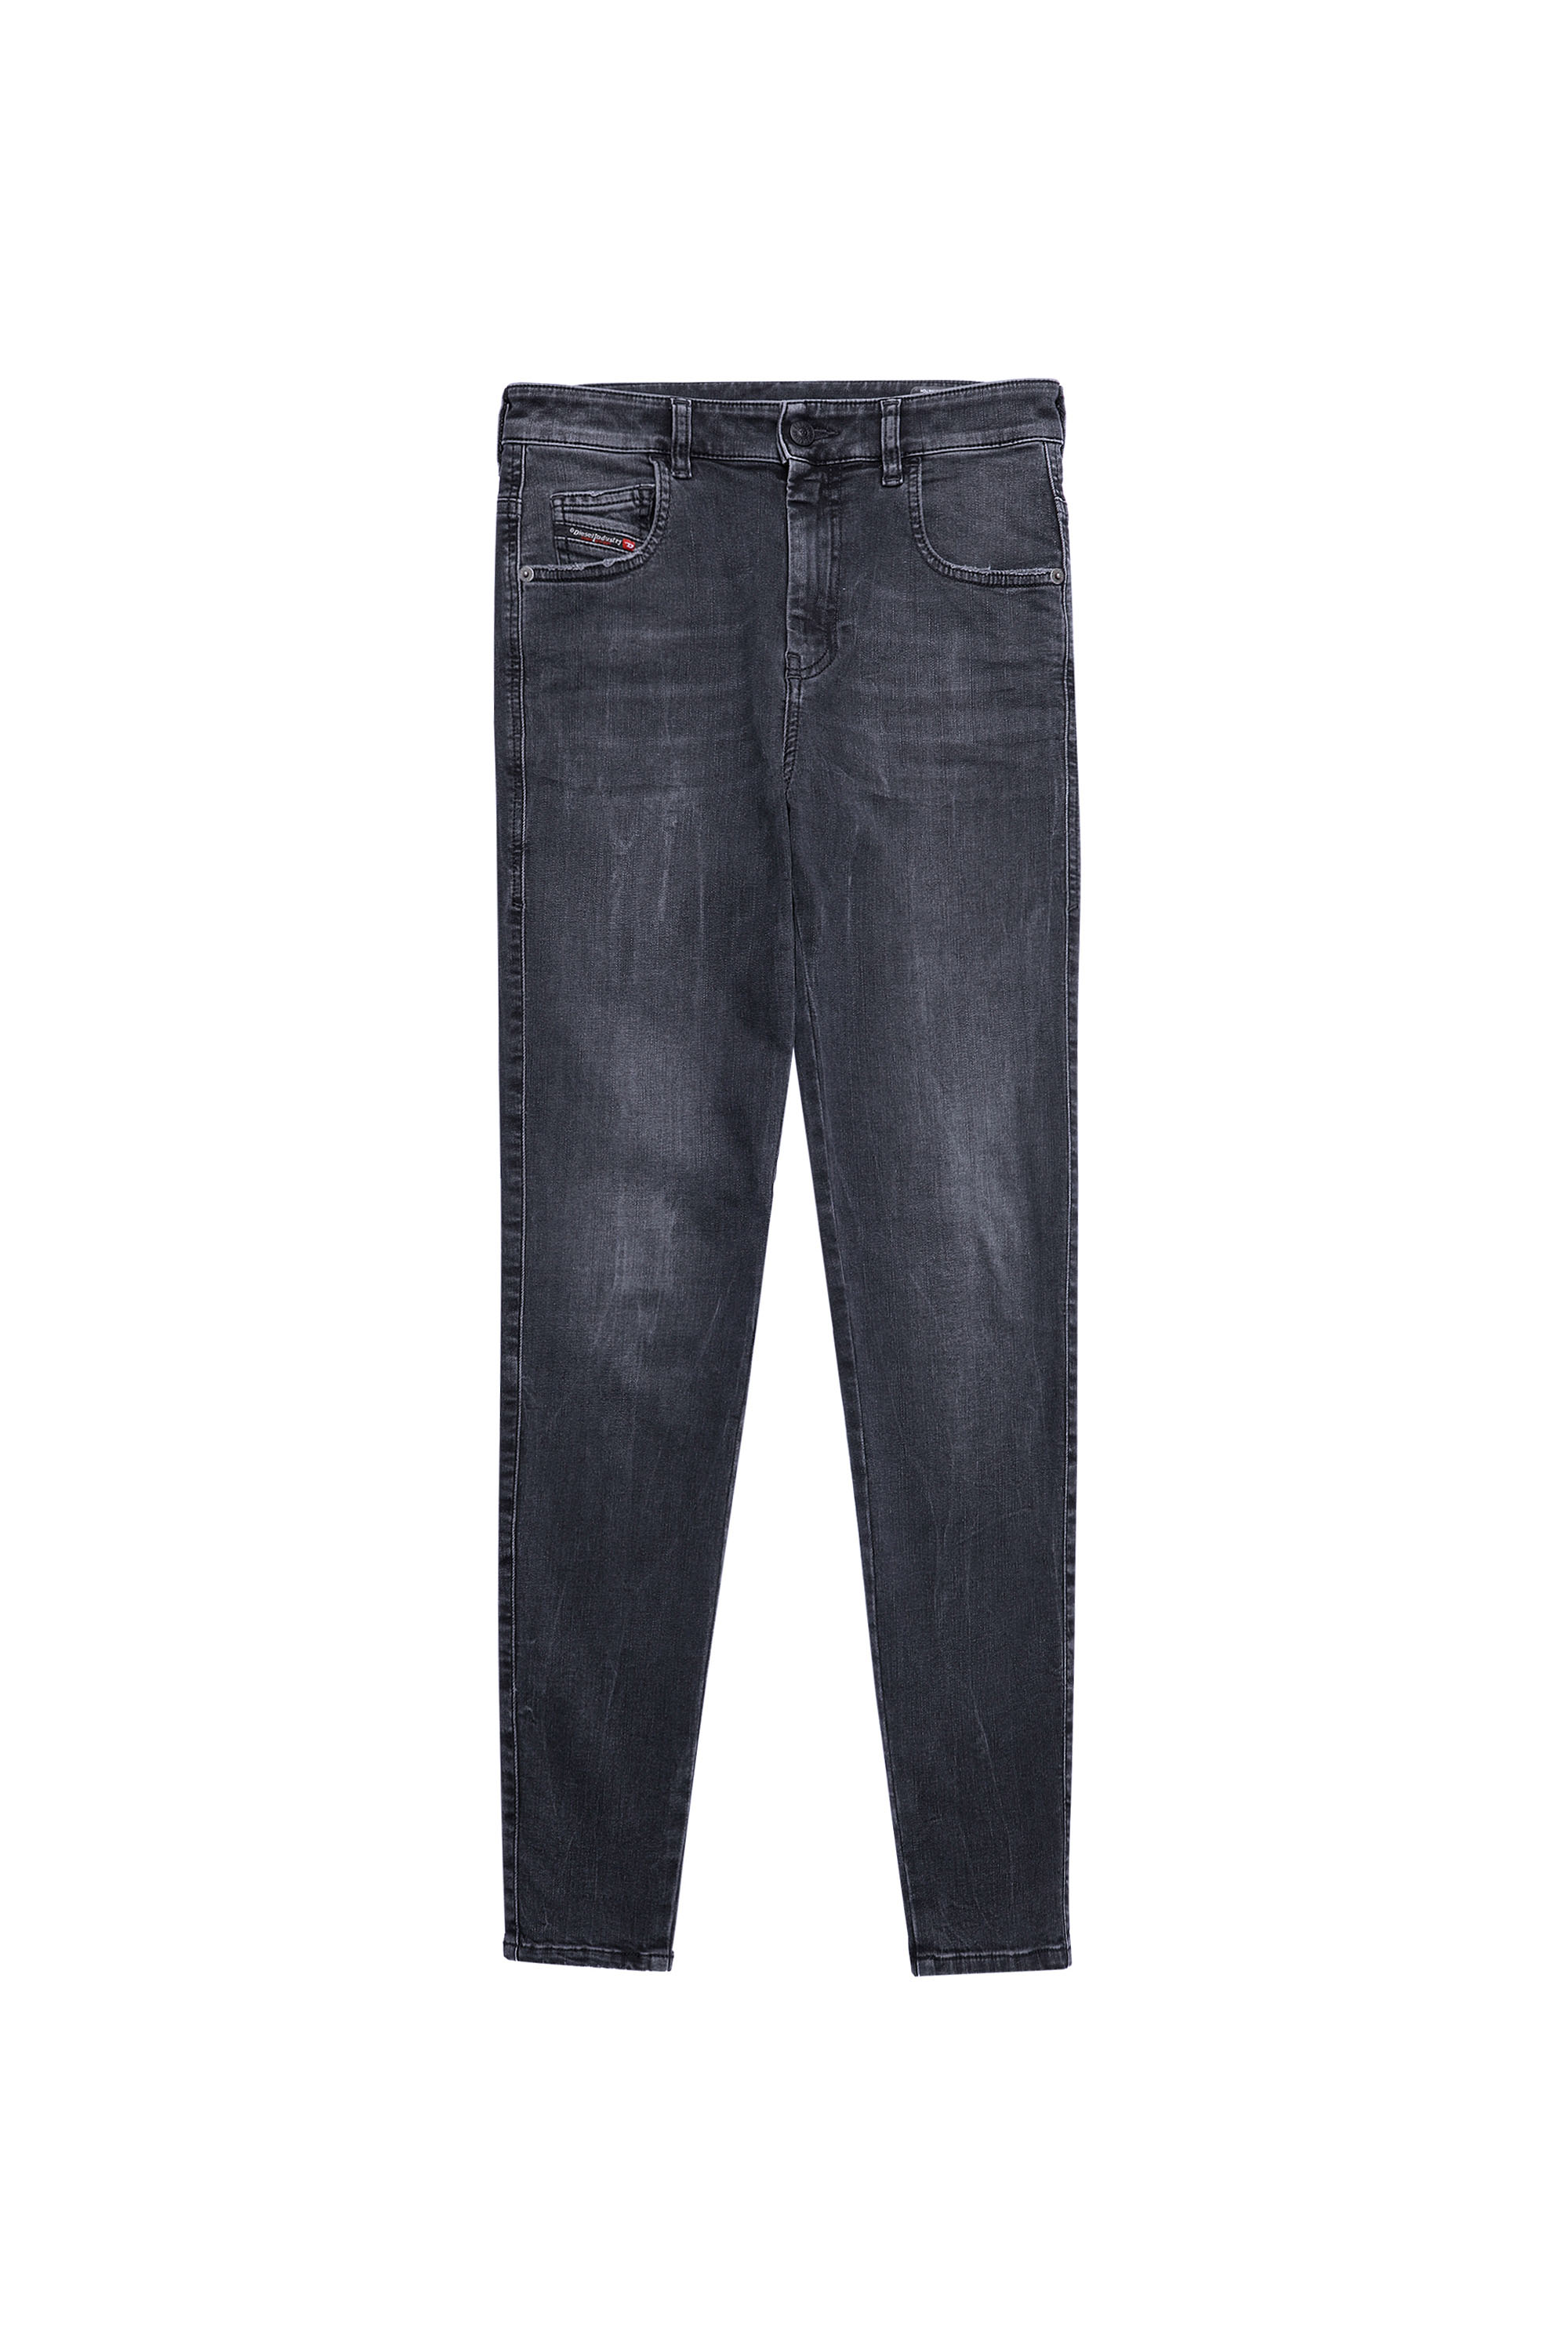 Diesel - Slandy High Skinny Jeans 069XP, Black/Dark grey - Image 6